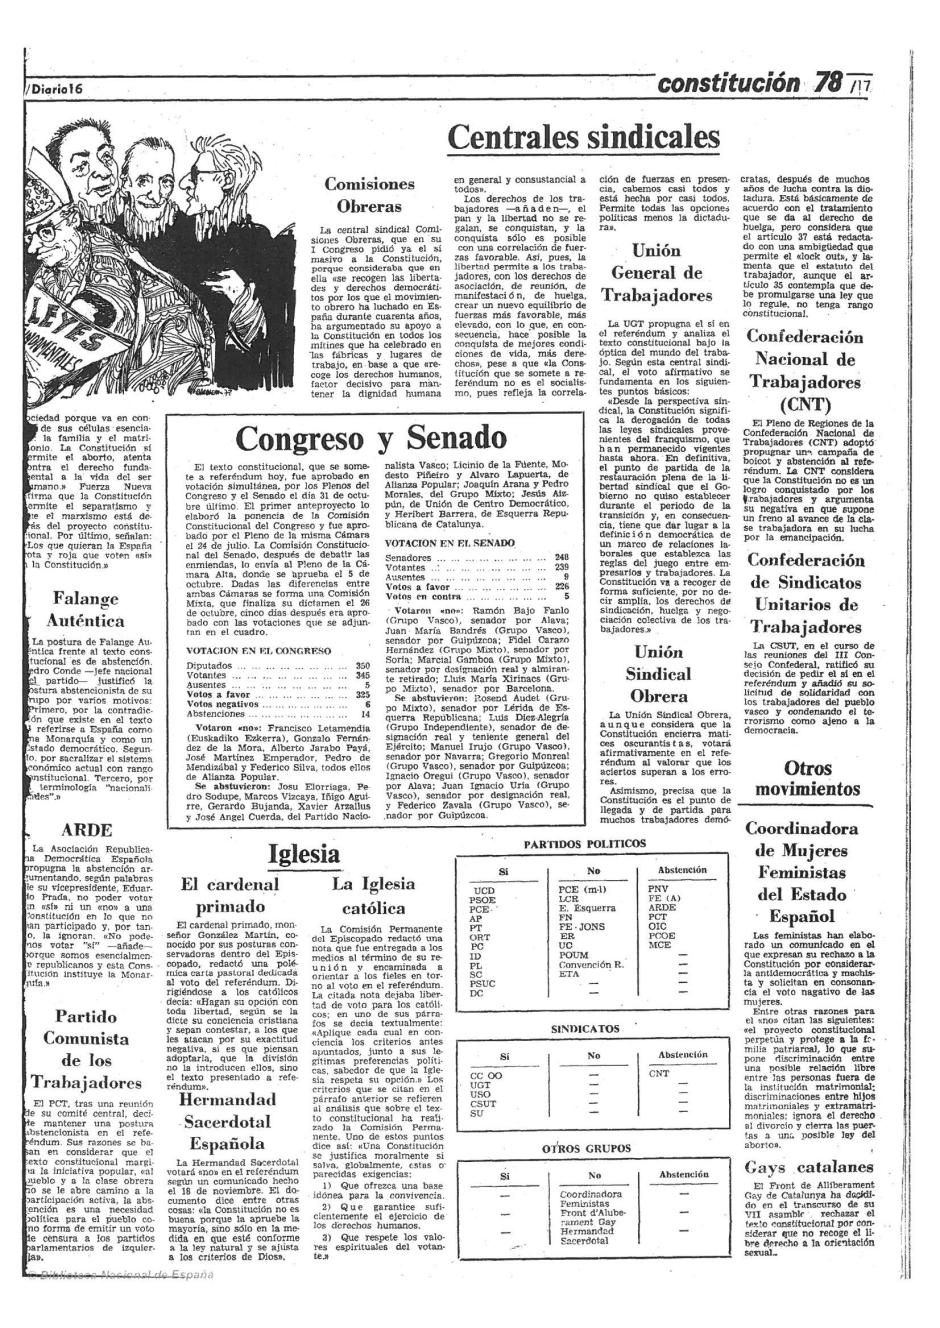 Los partidos se posicionan ante la Constitución - Diario 16 - 6 de Diciembre de 1978